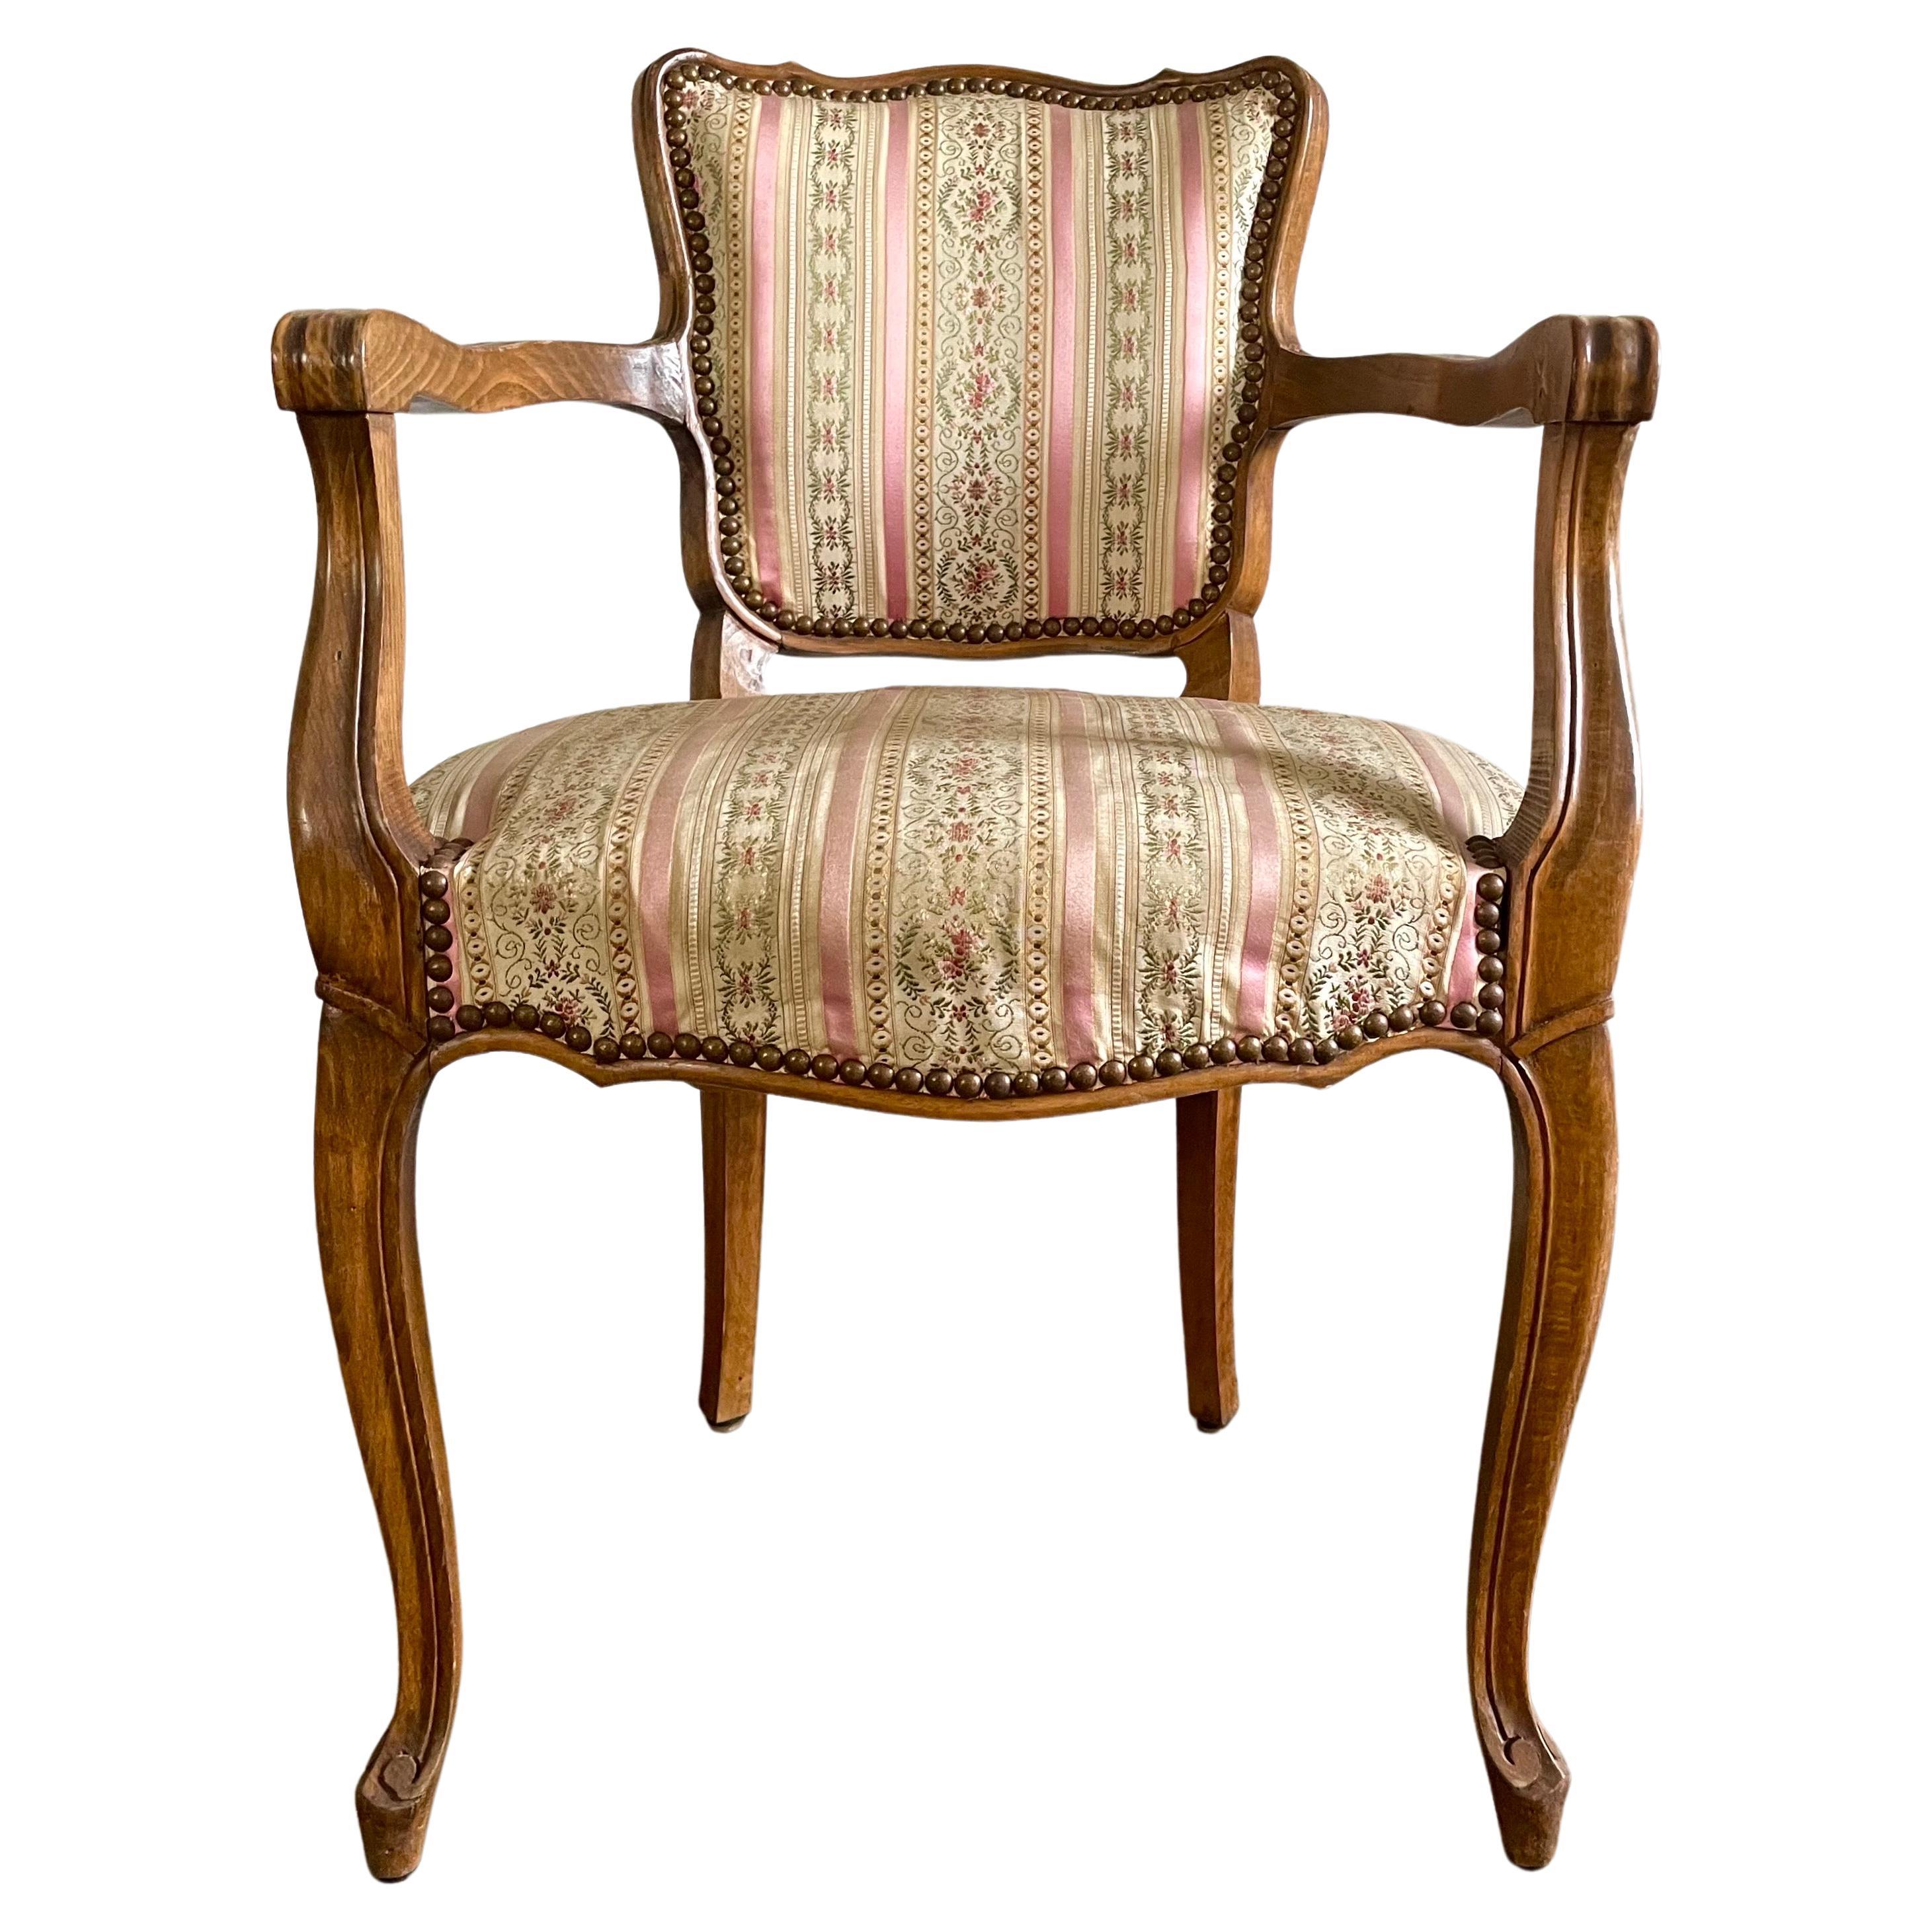 Paire de fauteuils bridge de style Louis XV - Fauteuils de bureau ;
Jolie tapisserie soyeuse dans les tons beige, rose et vert, caractéristique du style Louis XV.

Modèle classique à dossier bas avec accoudoirs. A hauteur de bureau.
La chaise de